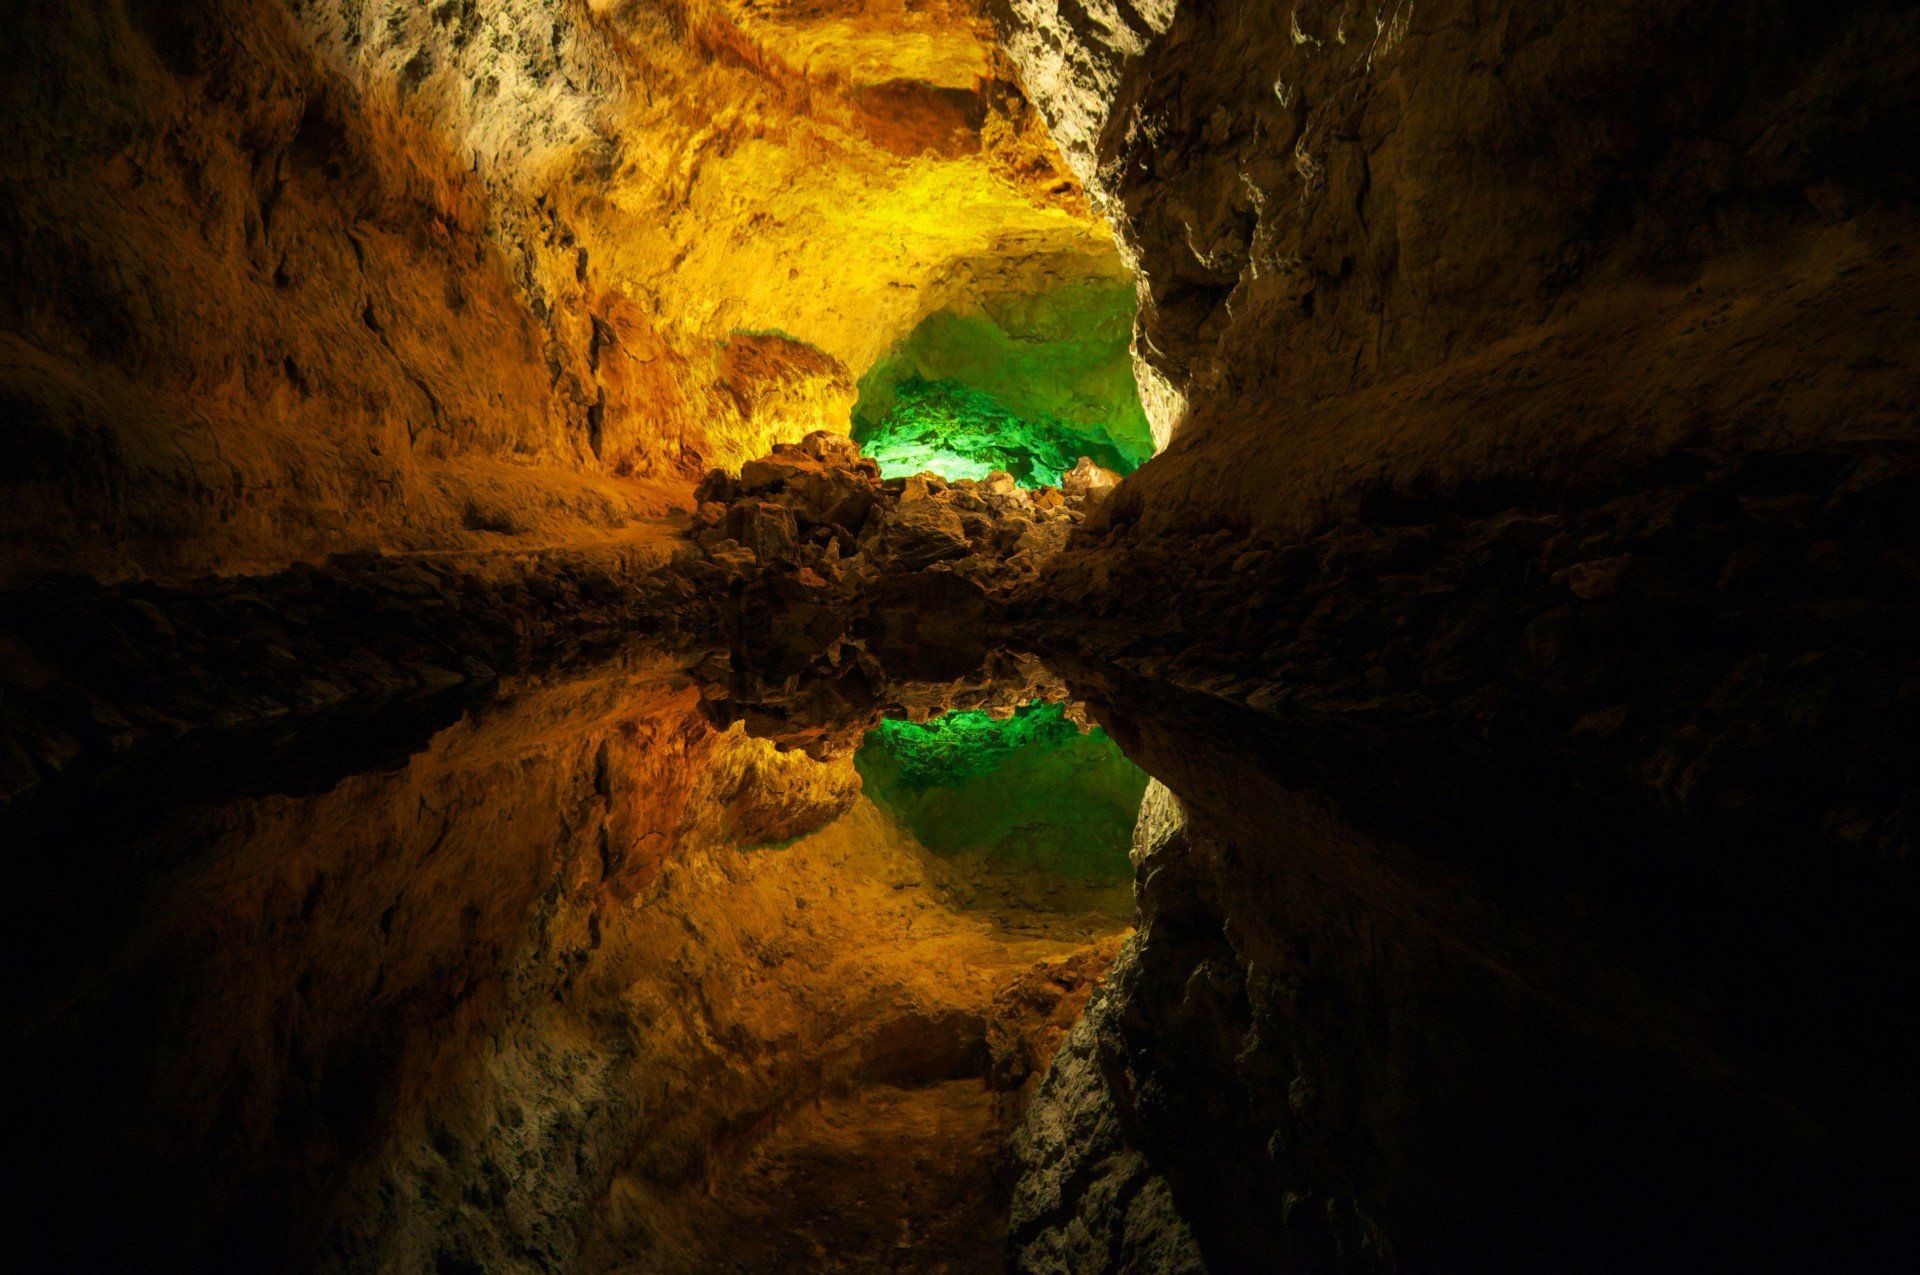 Cueva de los Verdes, north Lanzarote, near Punta Mujeres